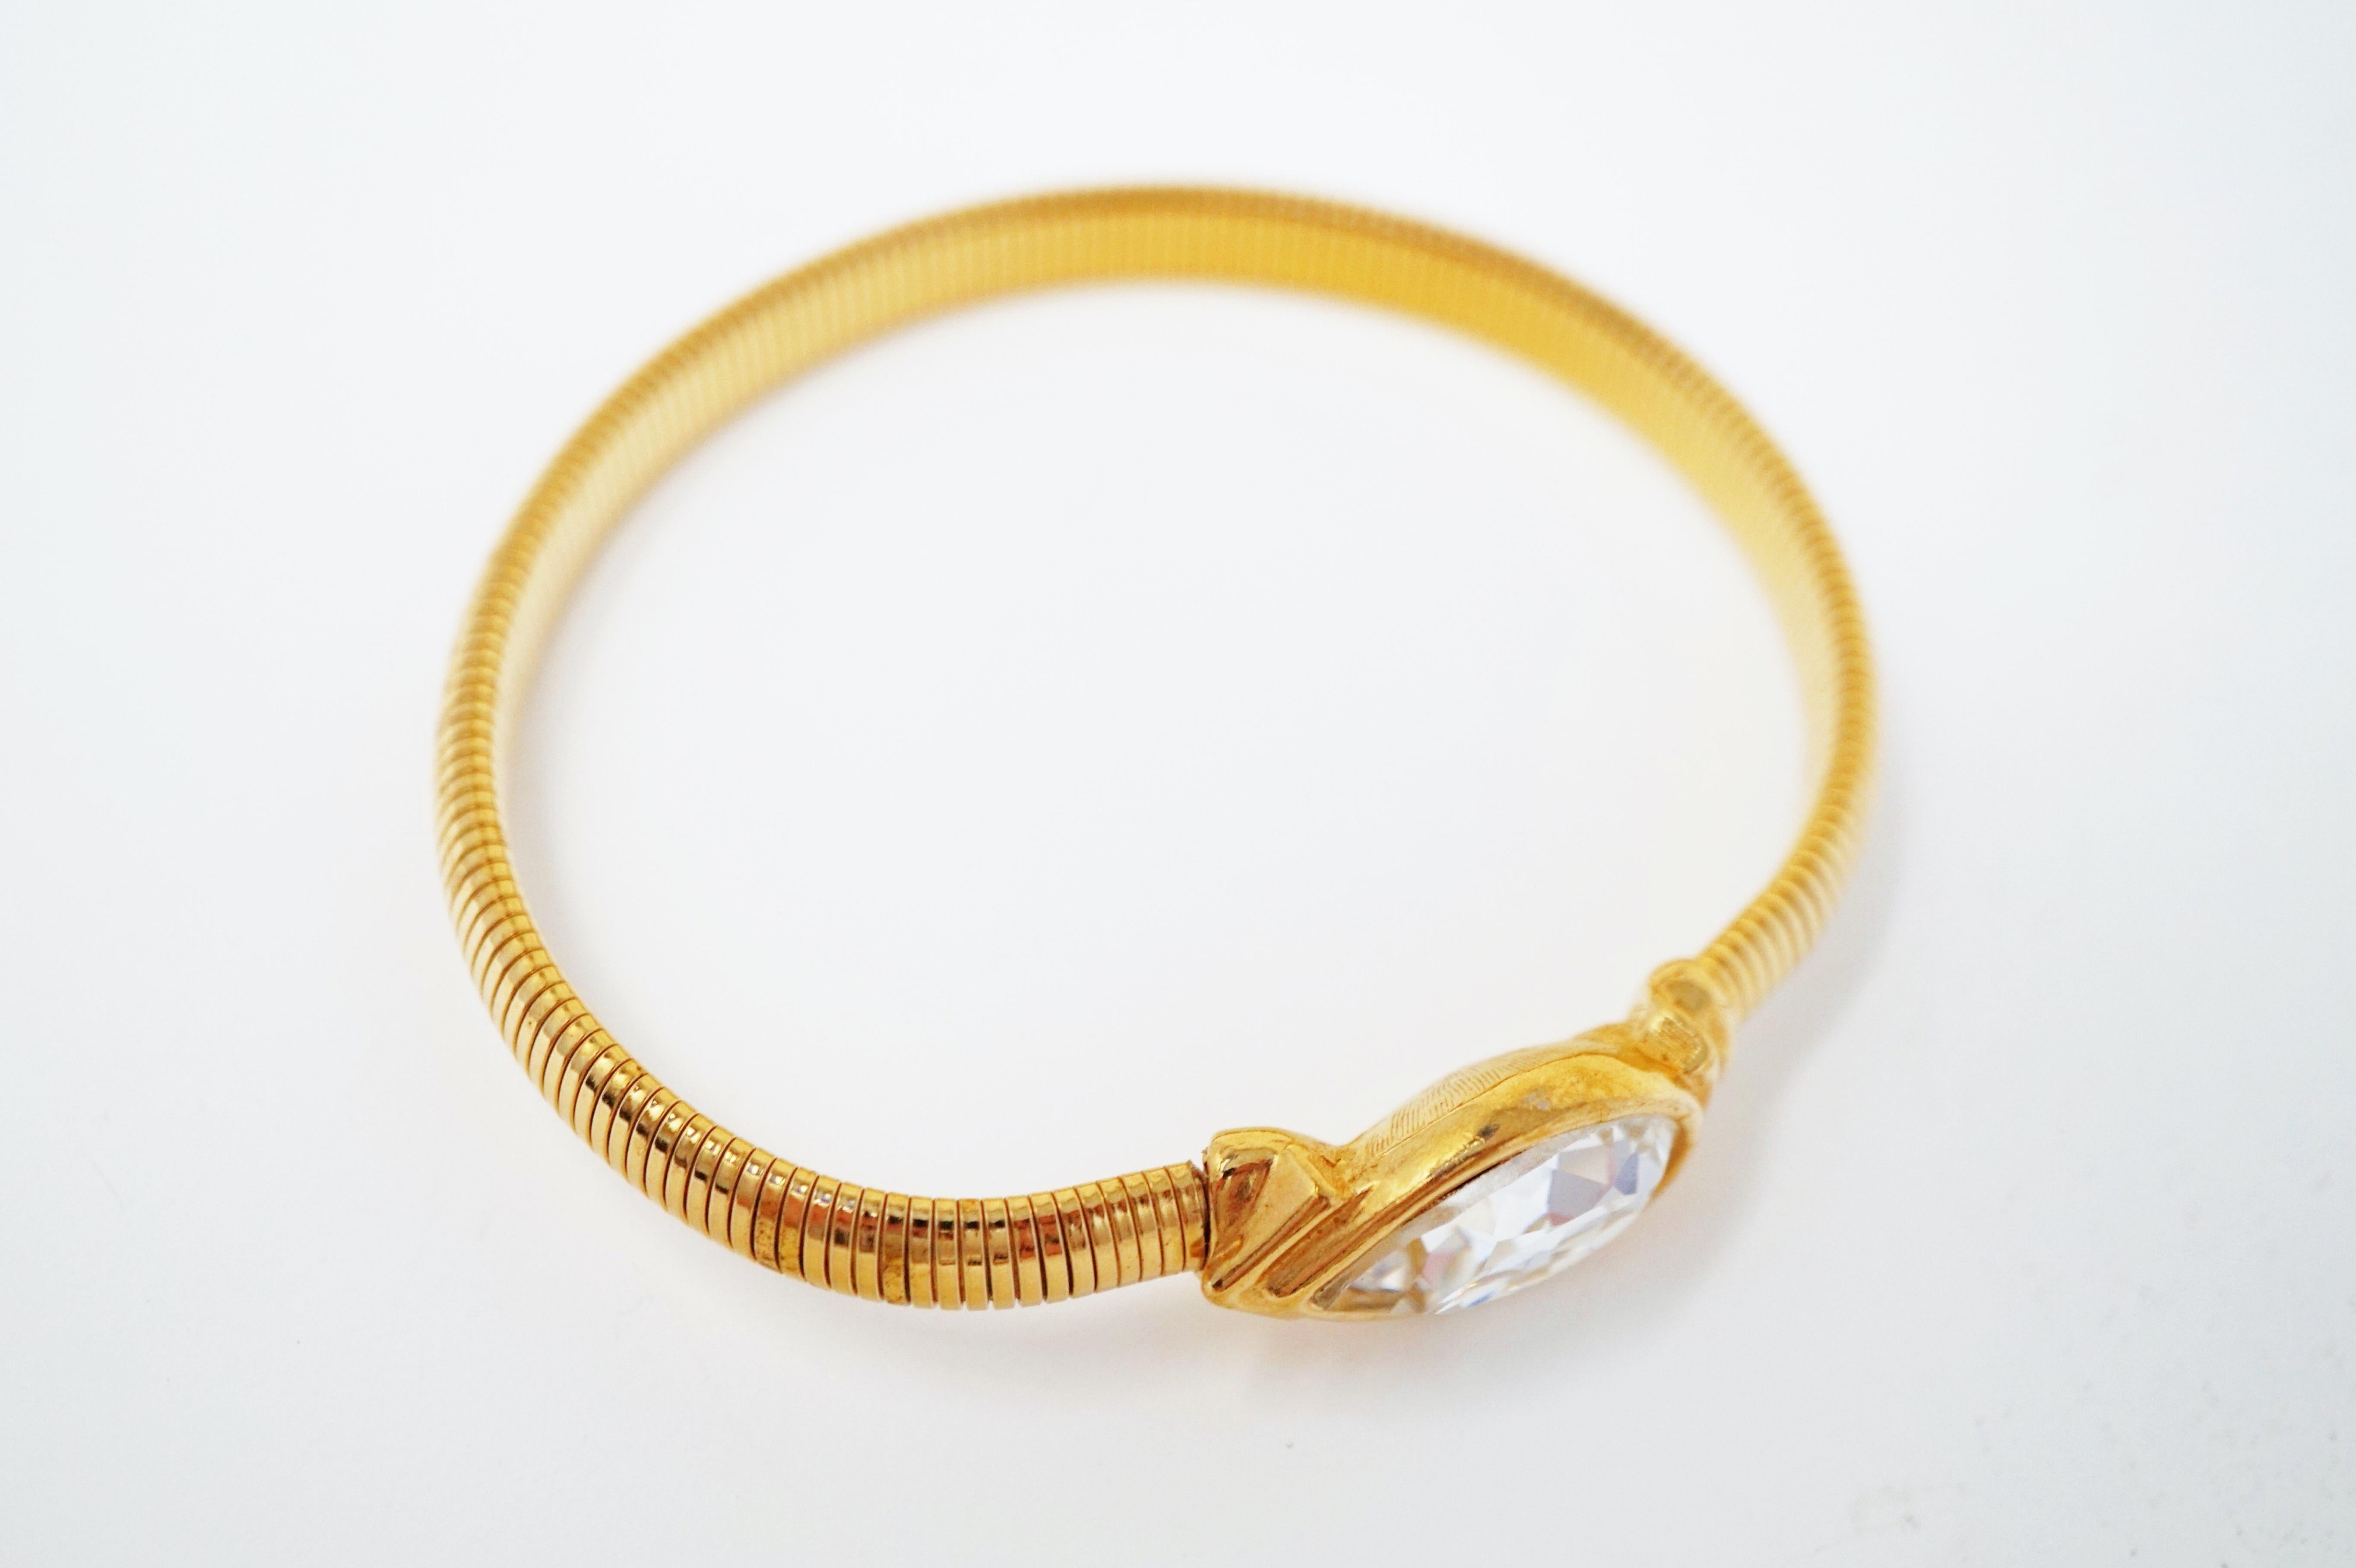 Pear Cut Swarovski Crystal Bracelet by Trifari, Signed, circa 1980